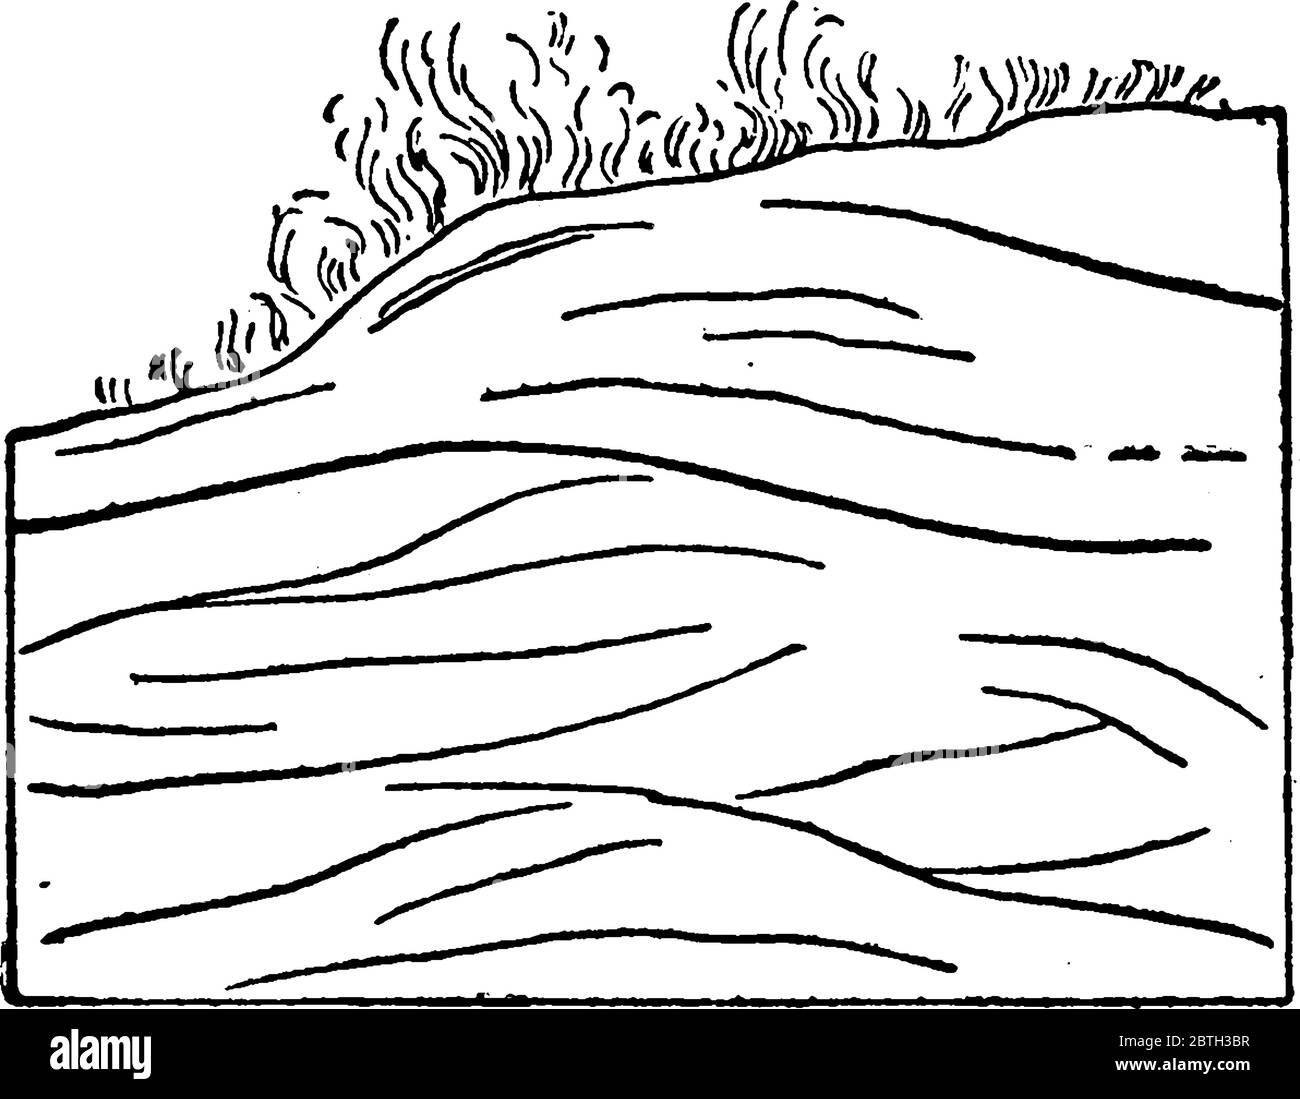 questa figura mostra un cumulo o cresta di sabbia formata da vento, disegno di linea d'annata o illustrazione di incisione. Illustrazione Vettoriale